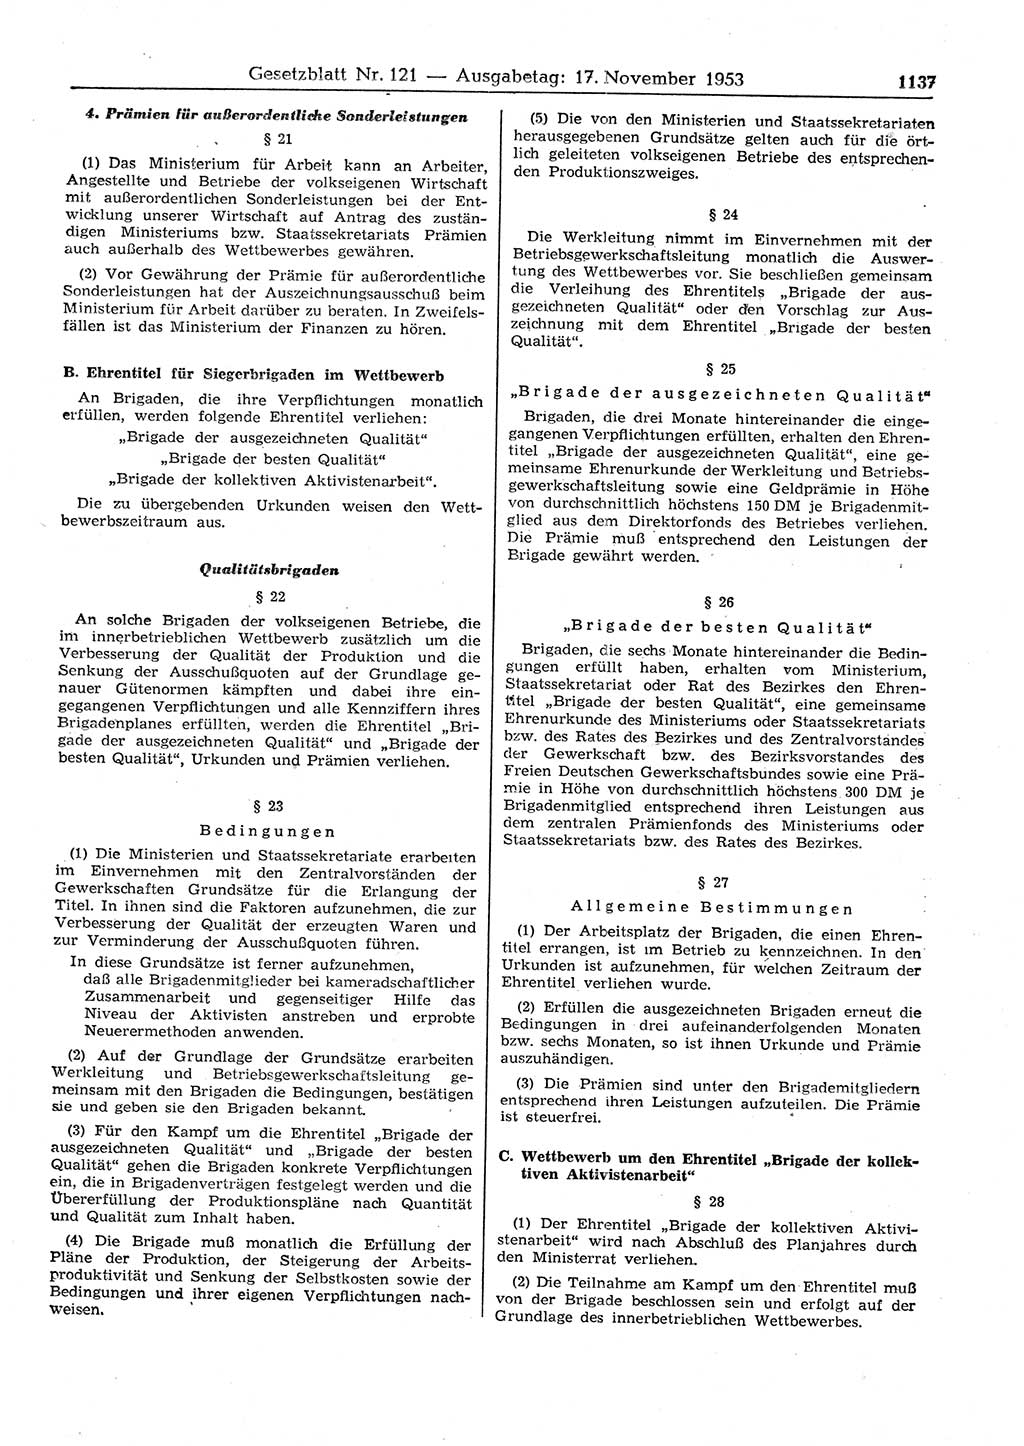 Gesetzblatt (GBl.) der Deutschen Demokratischen Republik (DDR) 1953, Seite 1137 (GBl. DDR 1953, S. 1137)